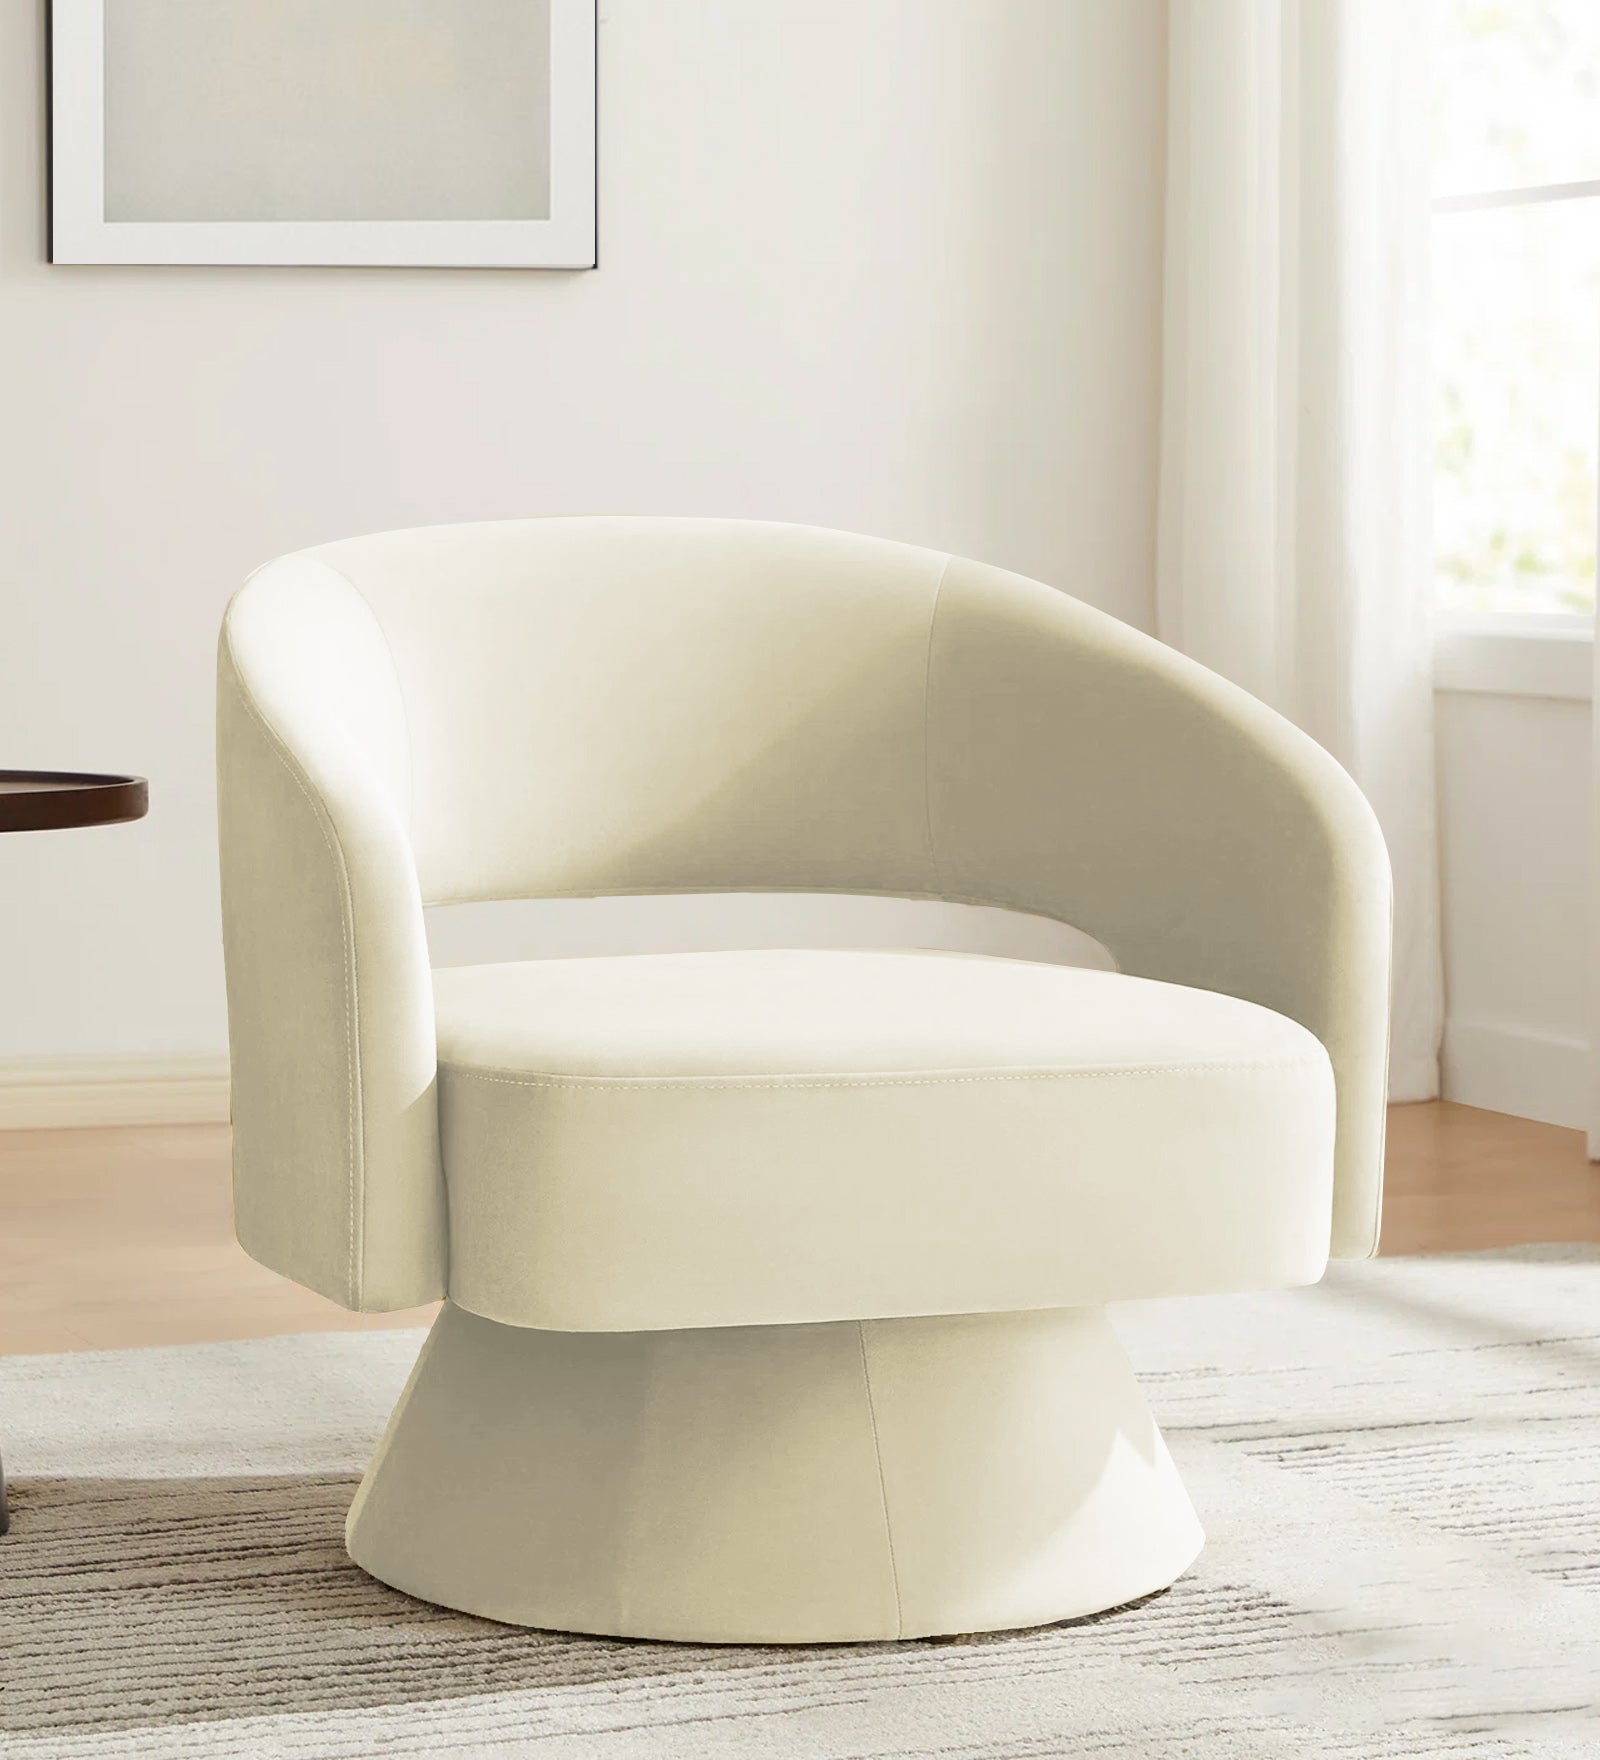 Pendra Velvet Swivel Chair in Warm White Colour